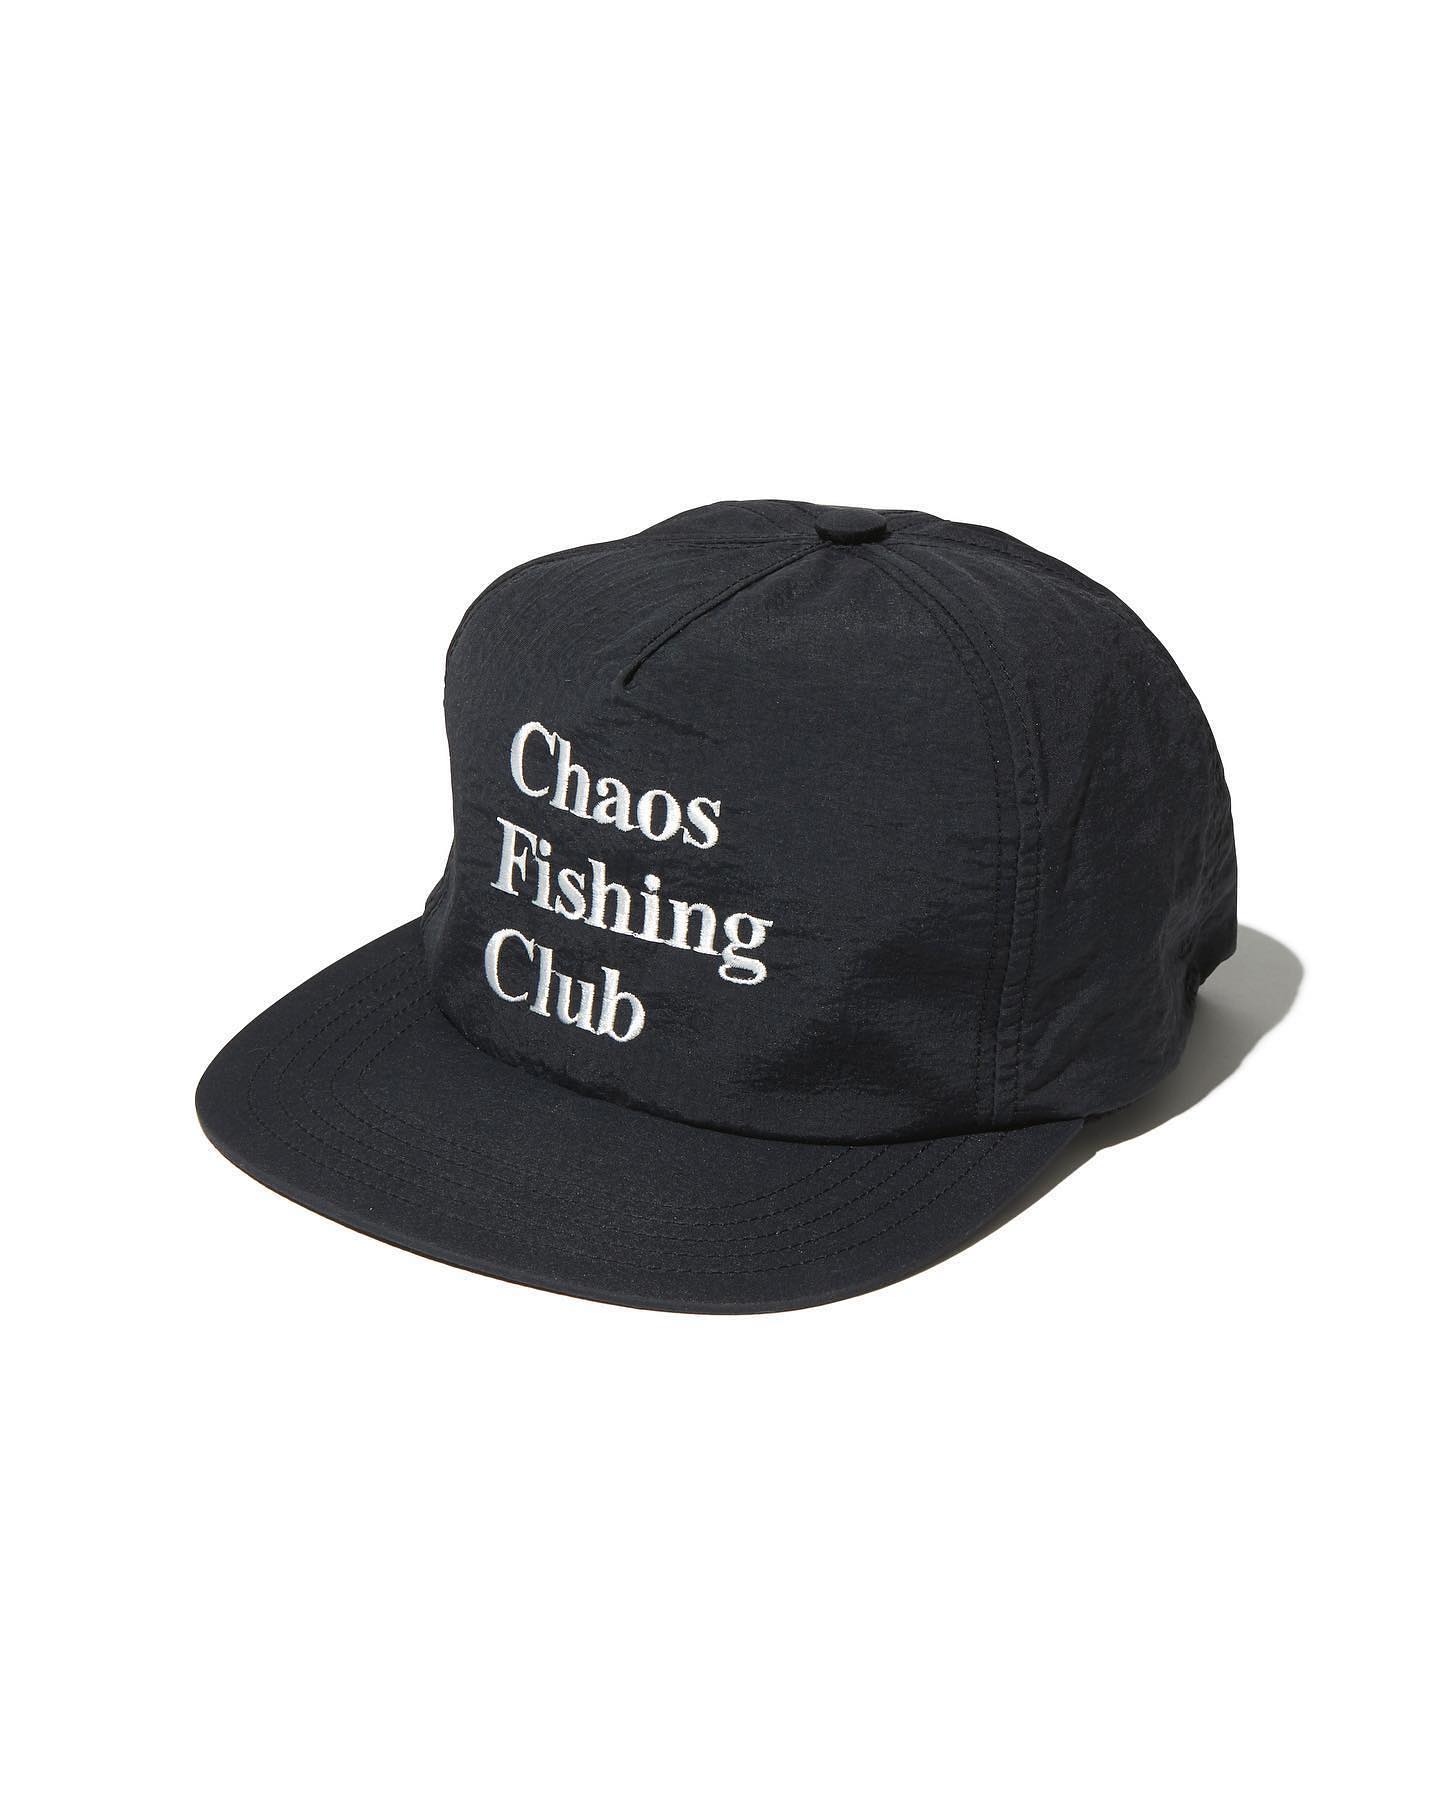 @chaos_fishing_club 2022/5/22(SUN.)12:00だよ？#chaosfishingclub #cfc#instantskateshop